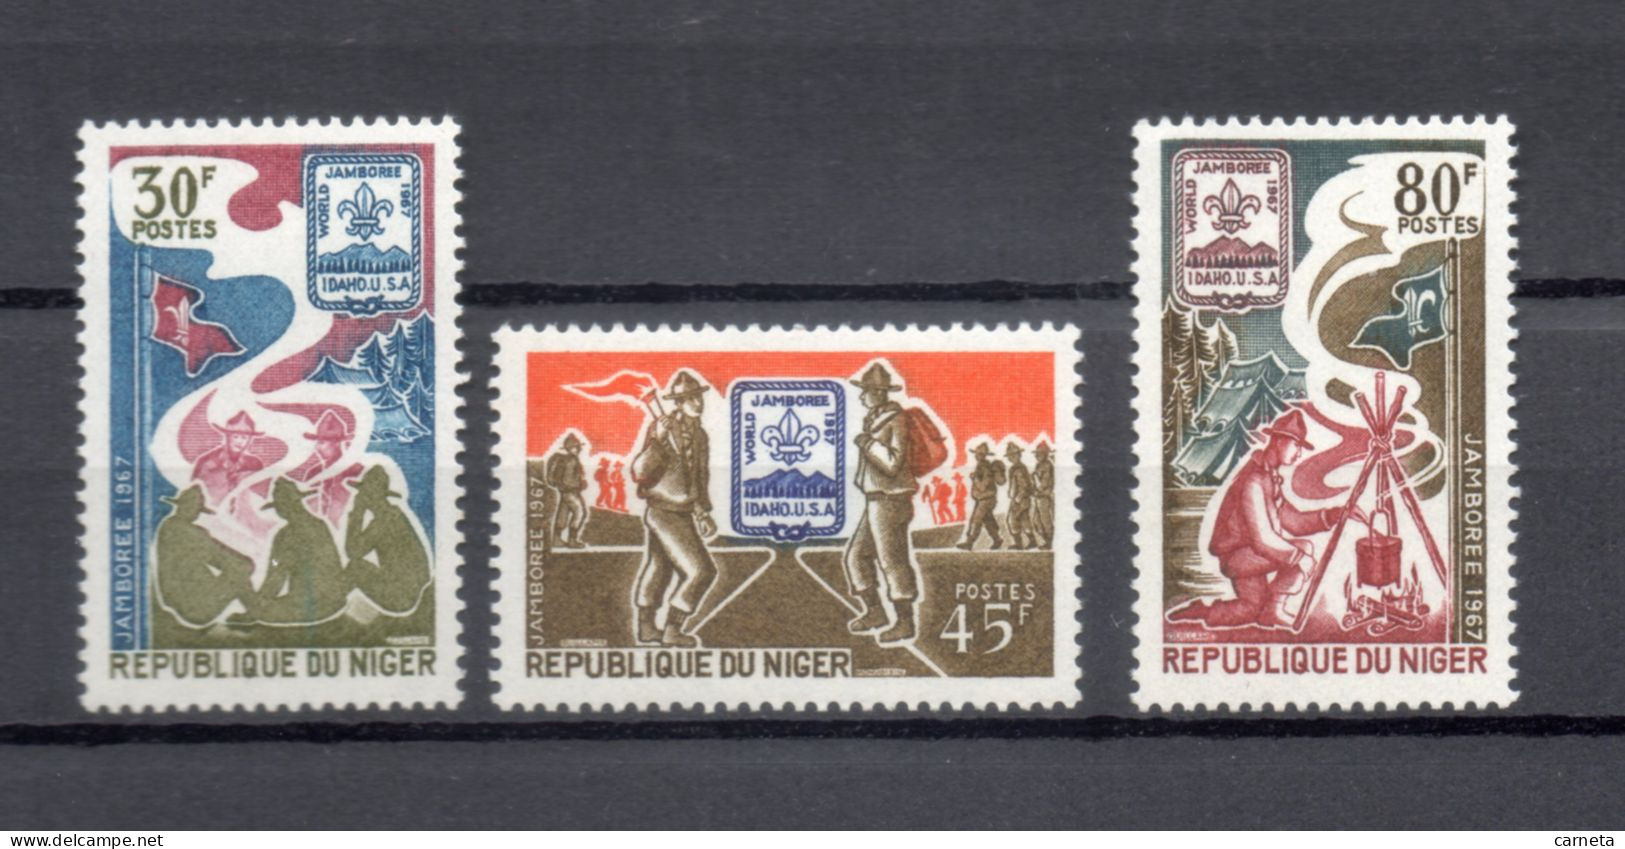 NIGER N° 199 à 201   NEUFS SANS CHARNIERE  COTE 3.50€    SCOUTISME - Niger (1960-...)